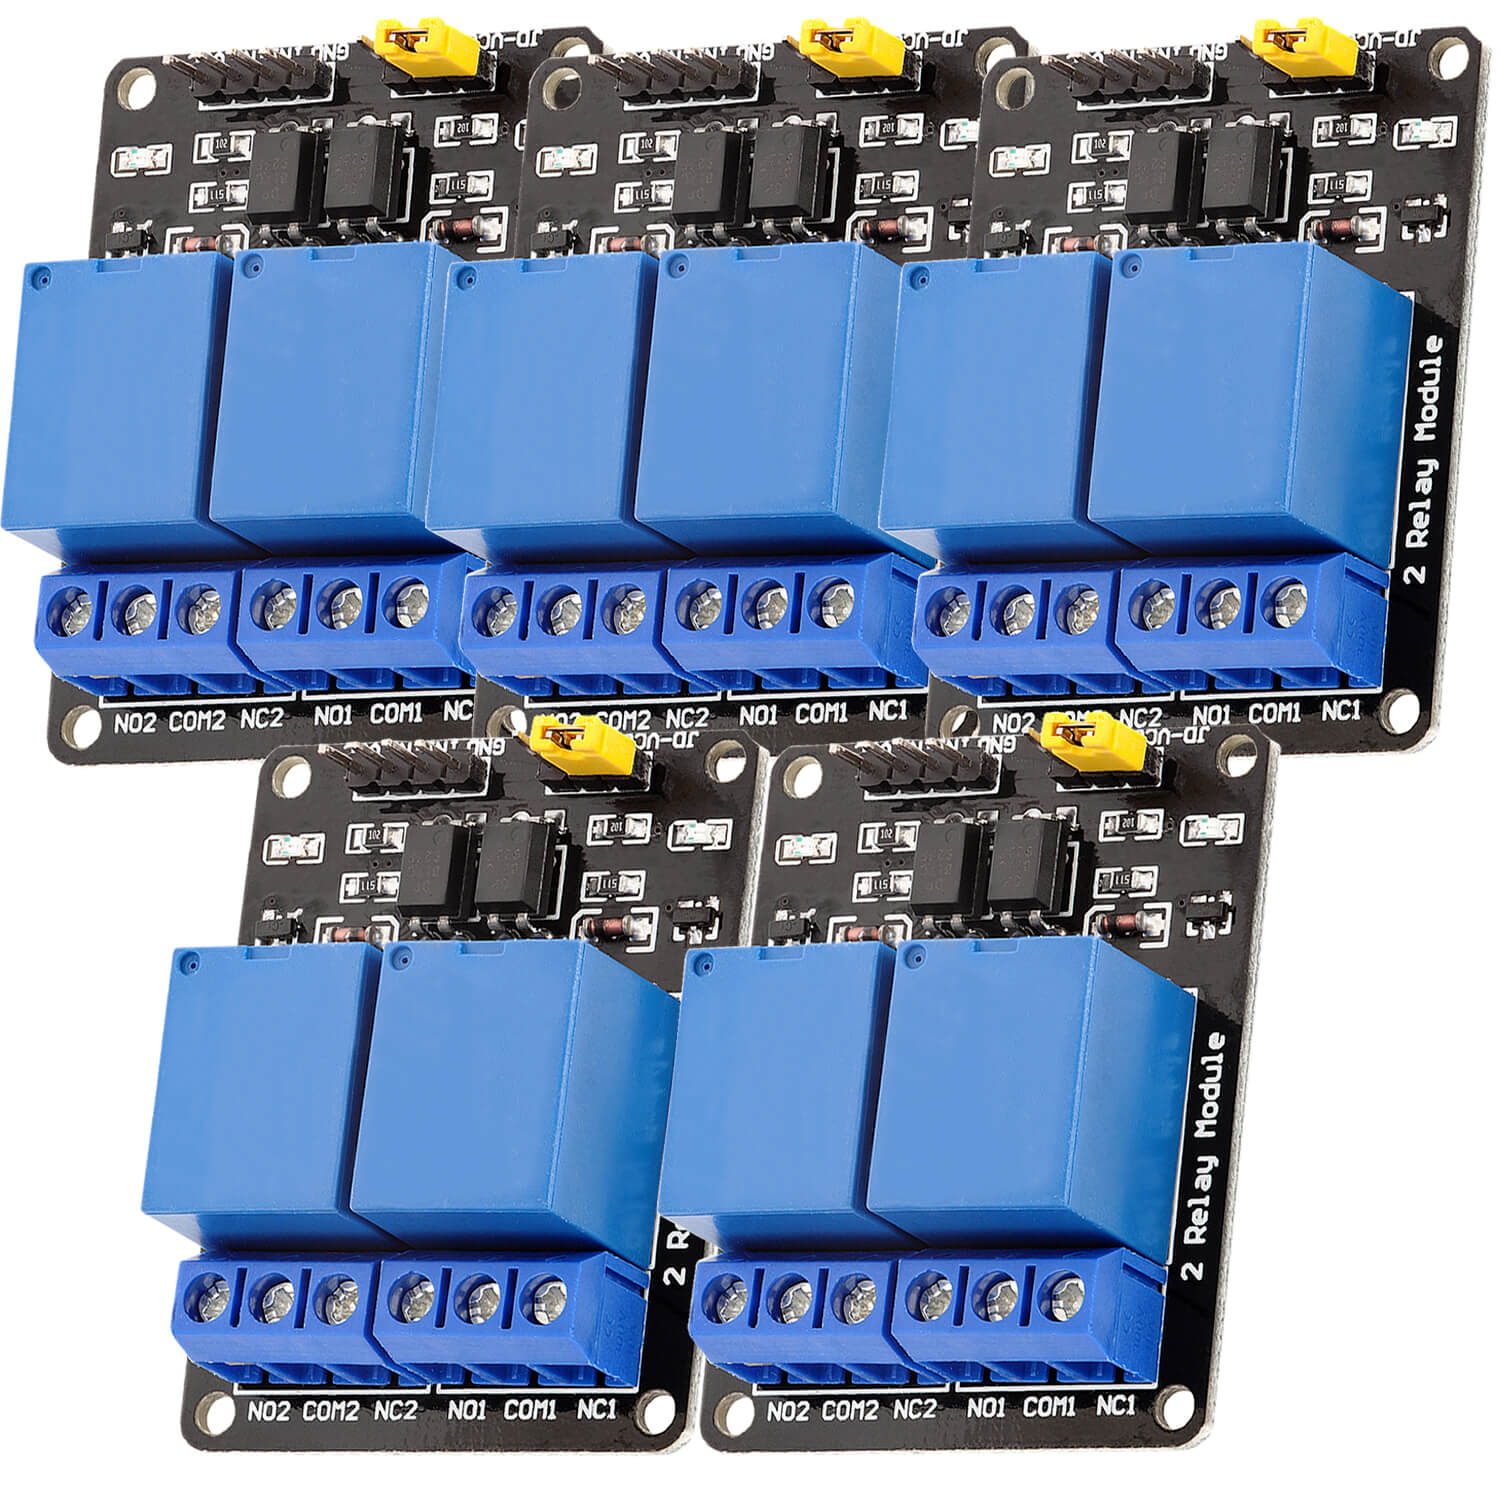 2-Relais Modul 5V mit Optokoppler Low-Level-Trigger kompatibel mit Arduino und Raspberry Pi